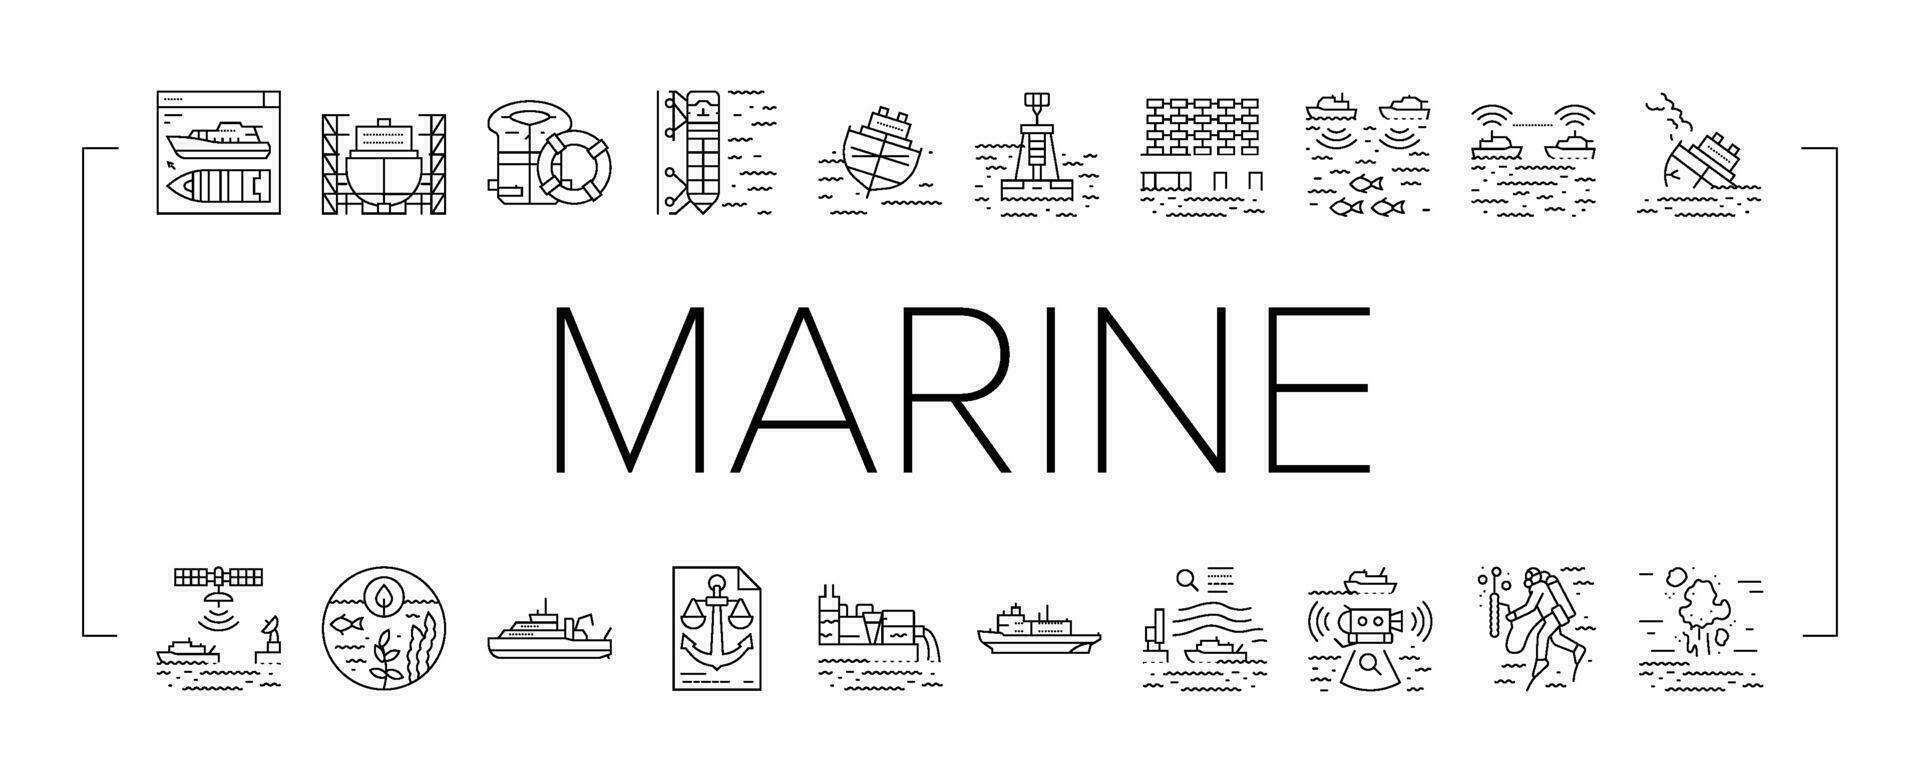 Marine Ingenieur Boot Mechaniker Symbole einstellen Vektor